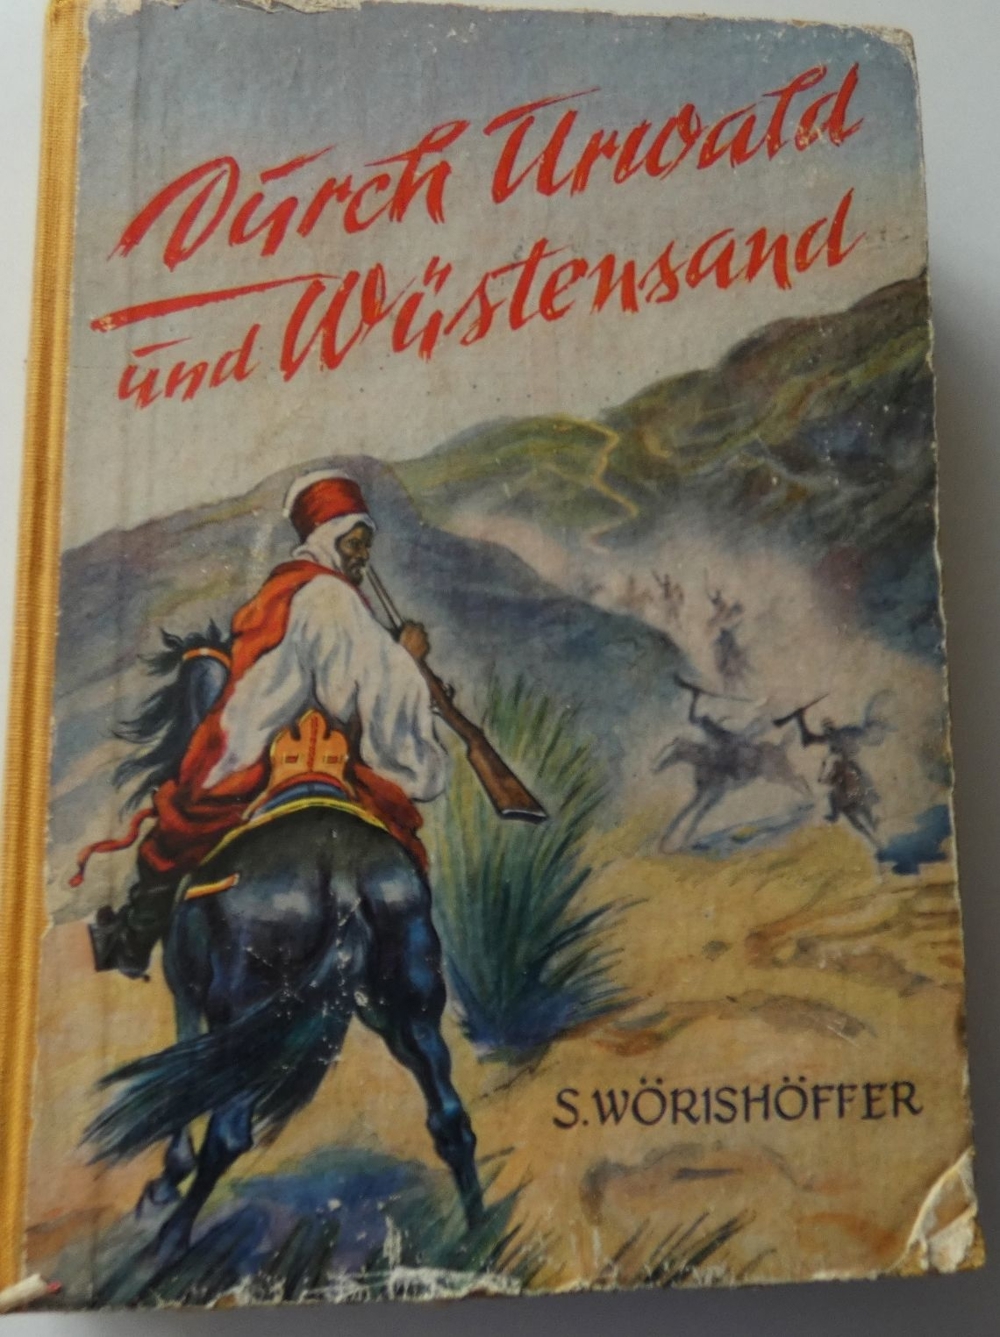 Durch Urwald und Wüstensand /S. Wörishöffer / Abenteuererzählung